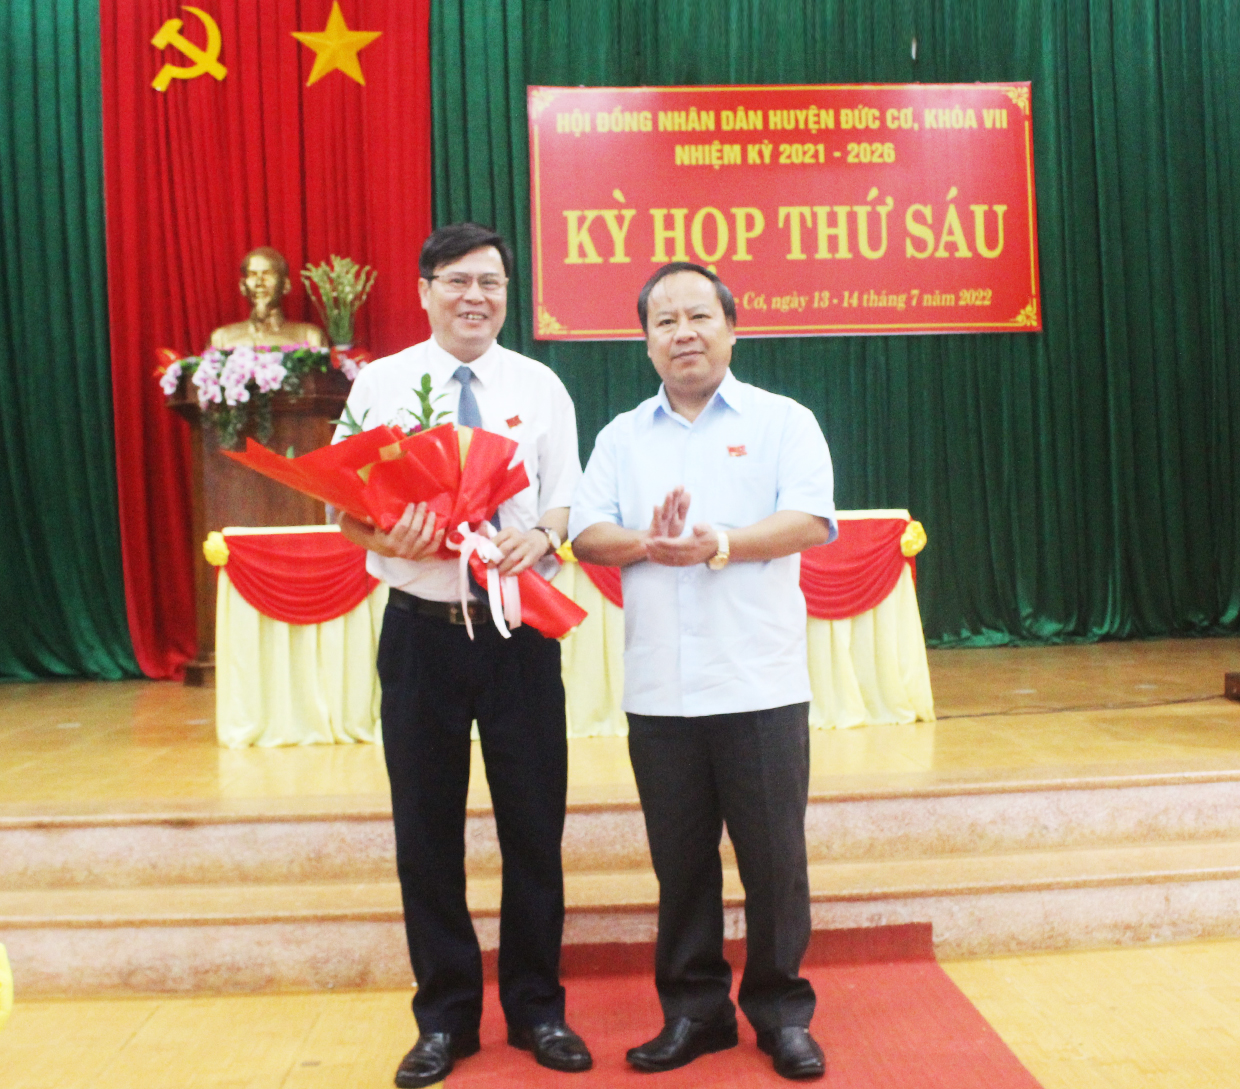 Article Ông Phạm Văn Cường đắc cử chức Chủ tịch HĐND huyện Đức Cơ khóa VII